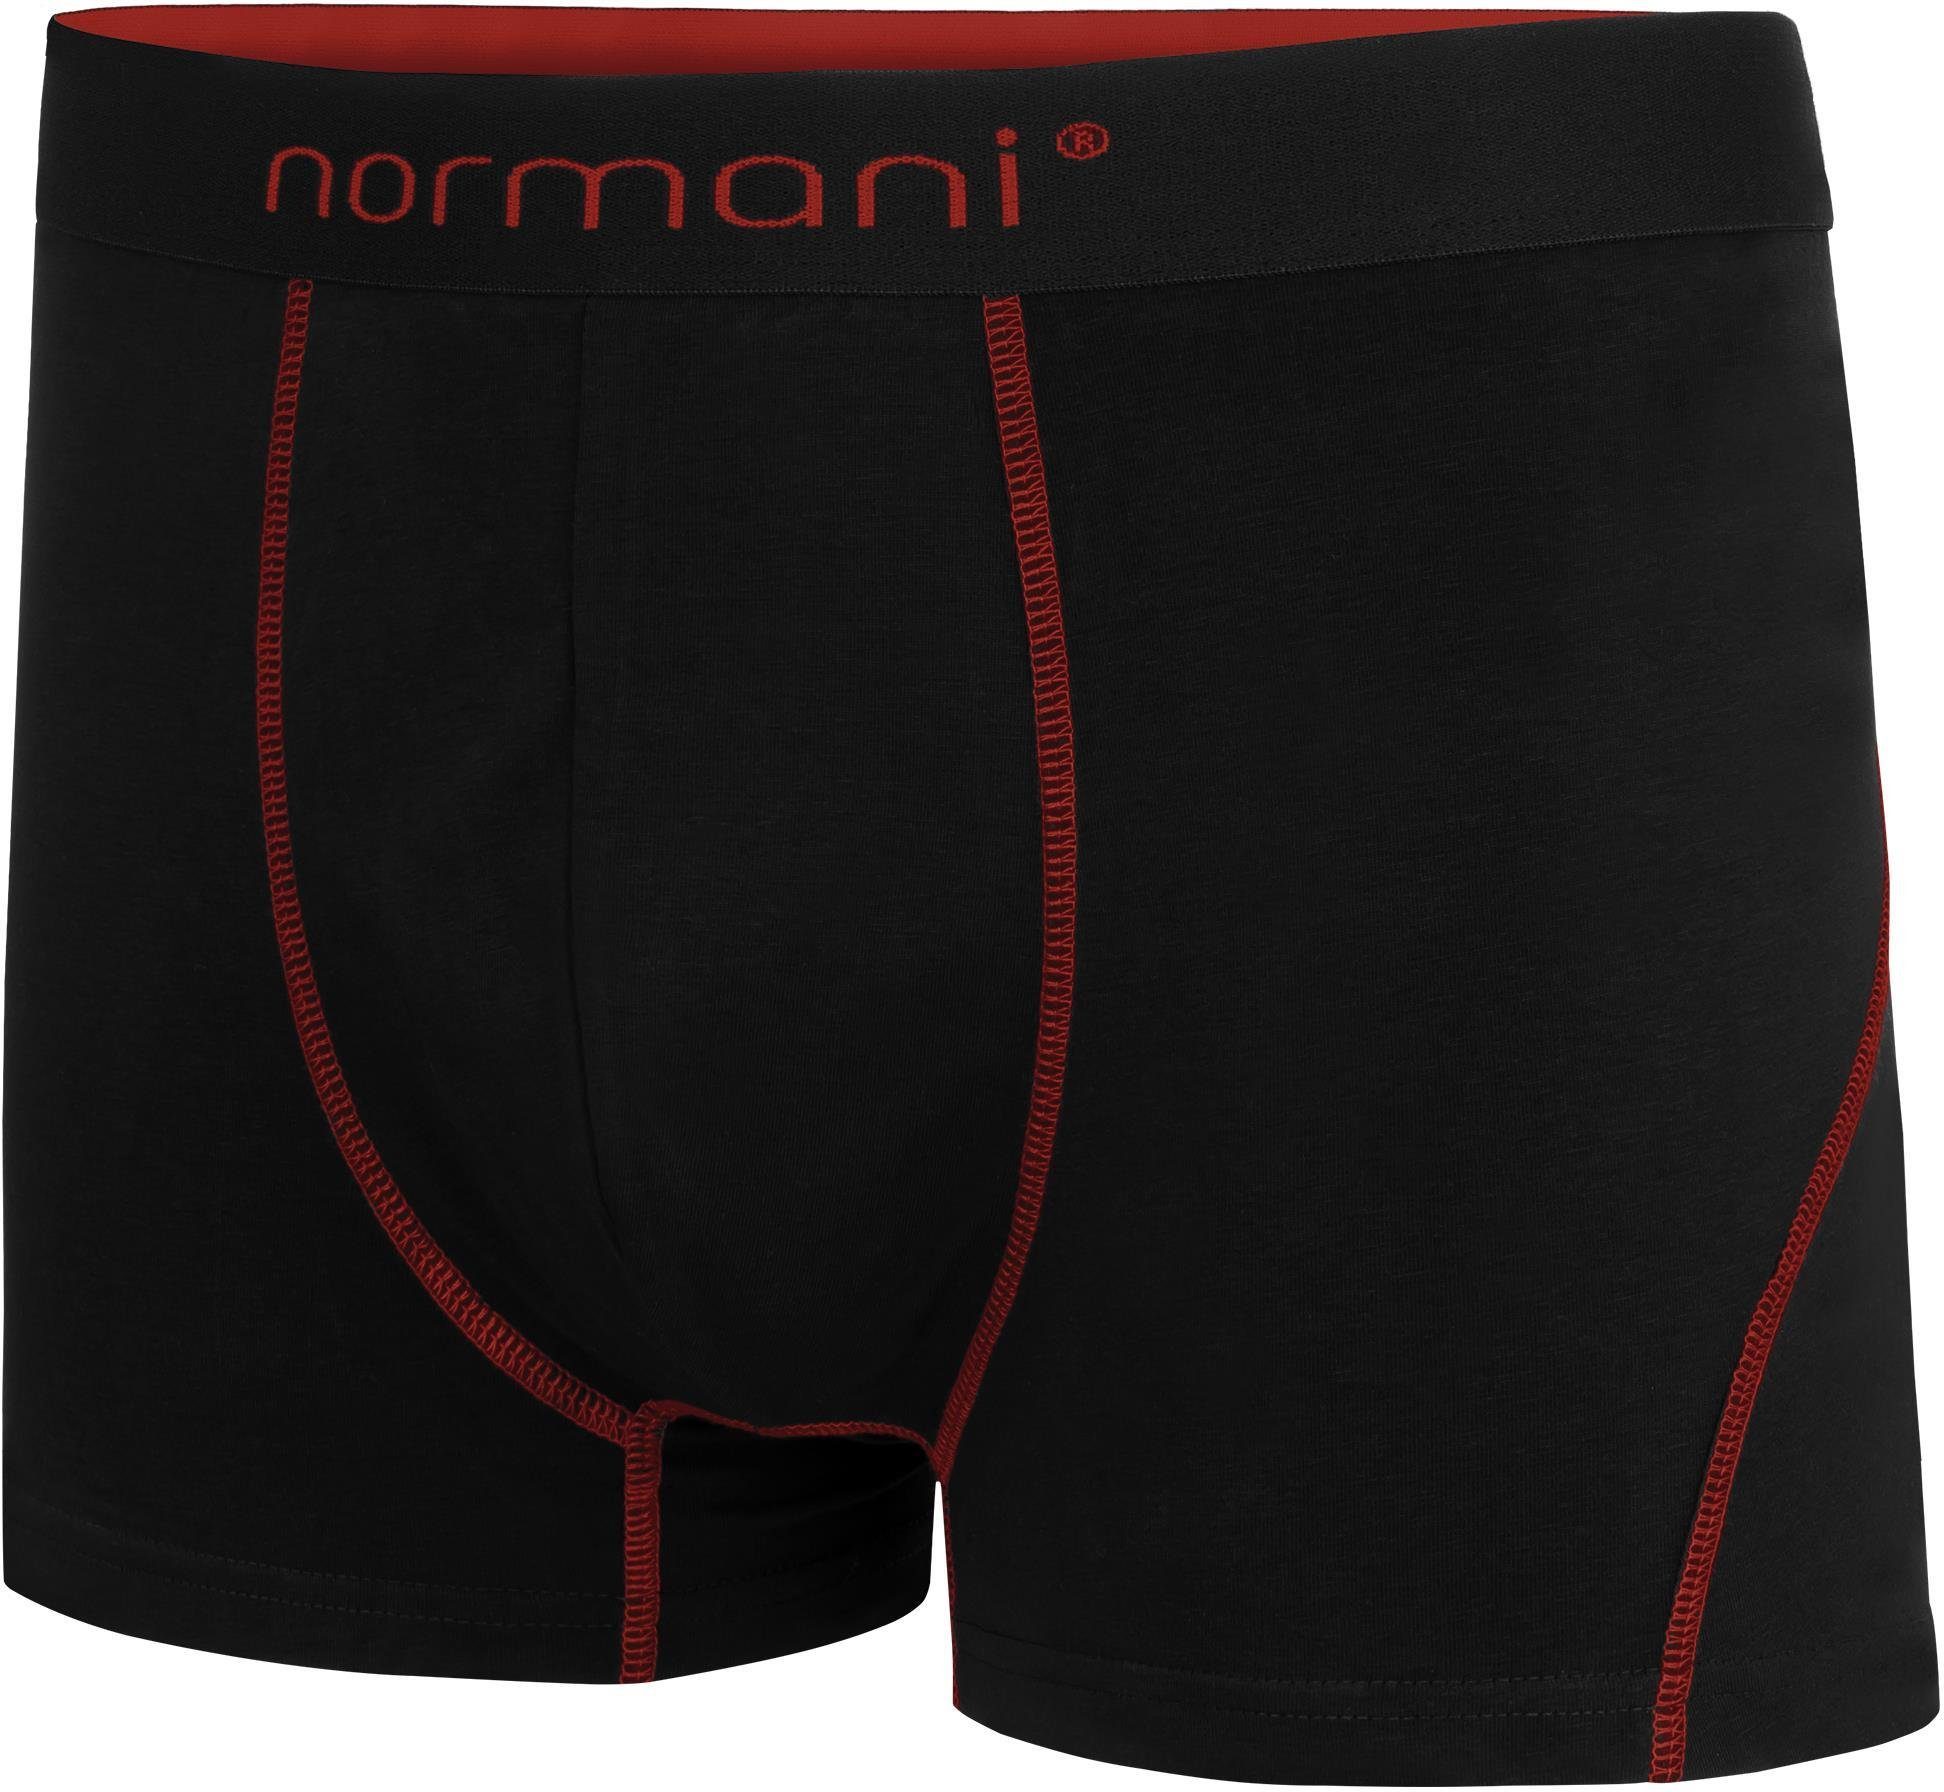 6 aus Herren atmungsaktiver normani Männer Boxershorts Baumwoll-Boxershorts Rot für Unterhose Baumwolle